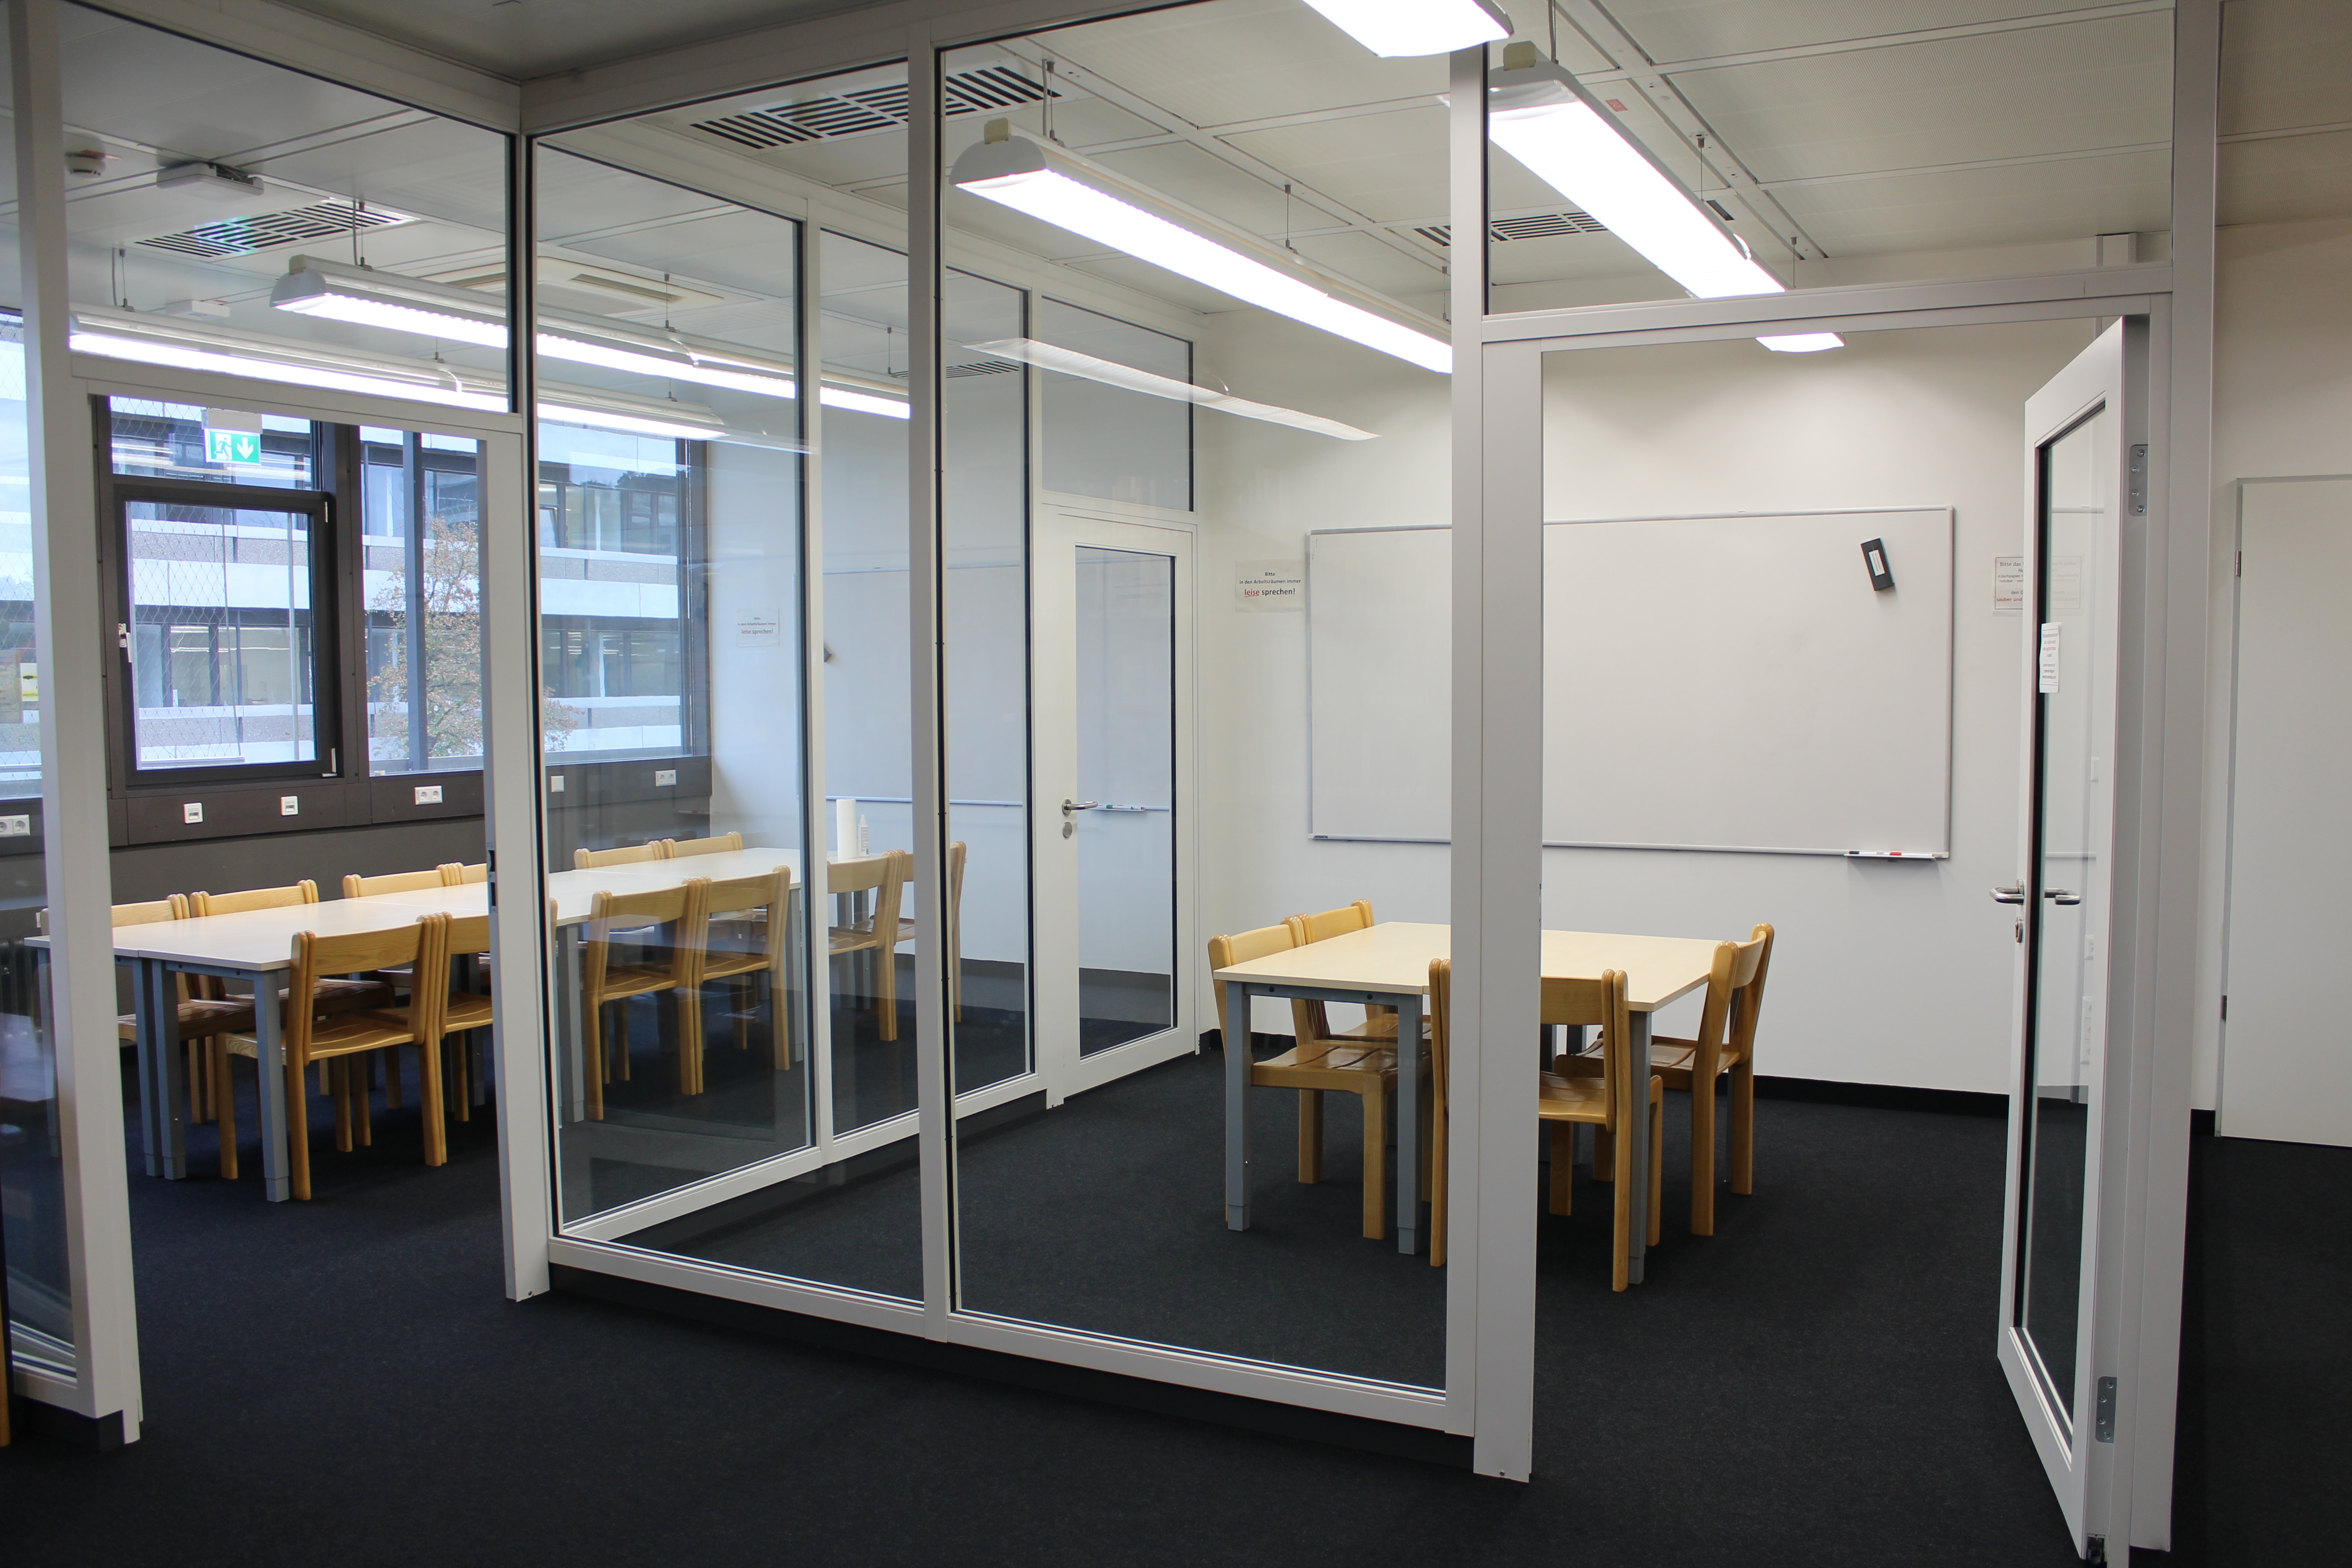 Zwei Gruppenräume innerhalb der Bibliothek werden durch Glaswände vom restlichen Raum abgetrennt. Es befinden sich Tische, Stühle und jeweils ein Whiteboard in den Räumen.